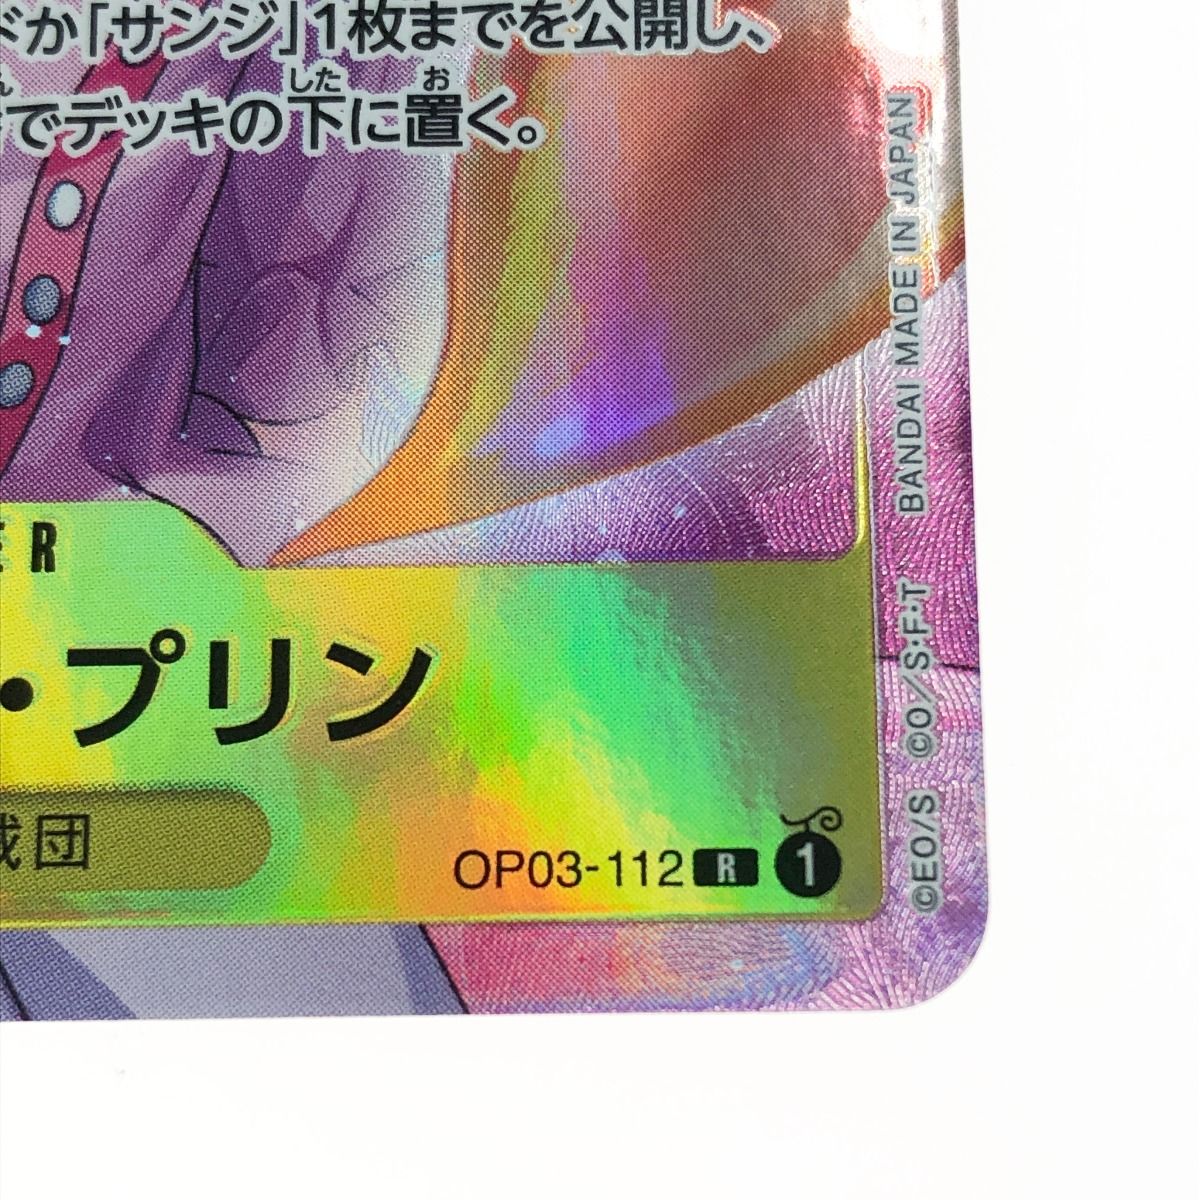 〇〇 ワンピースカード シャーロットプリン OP03/112P1 - メルカリ